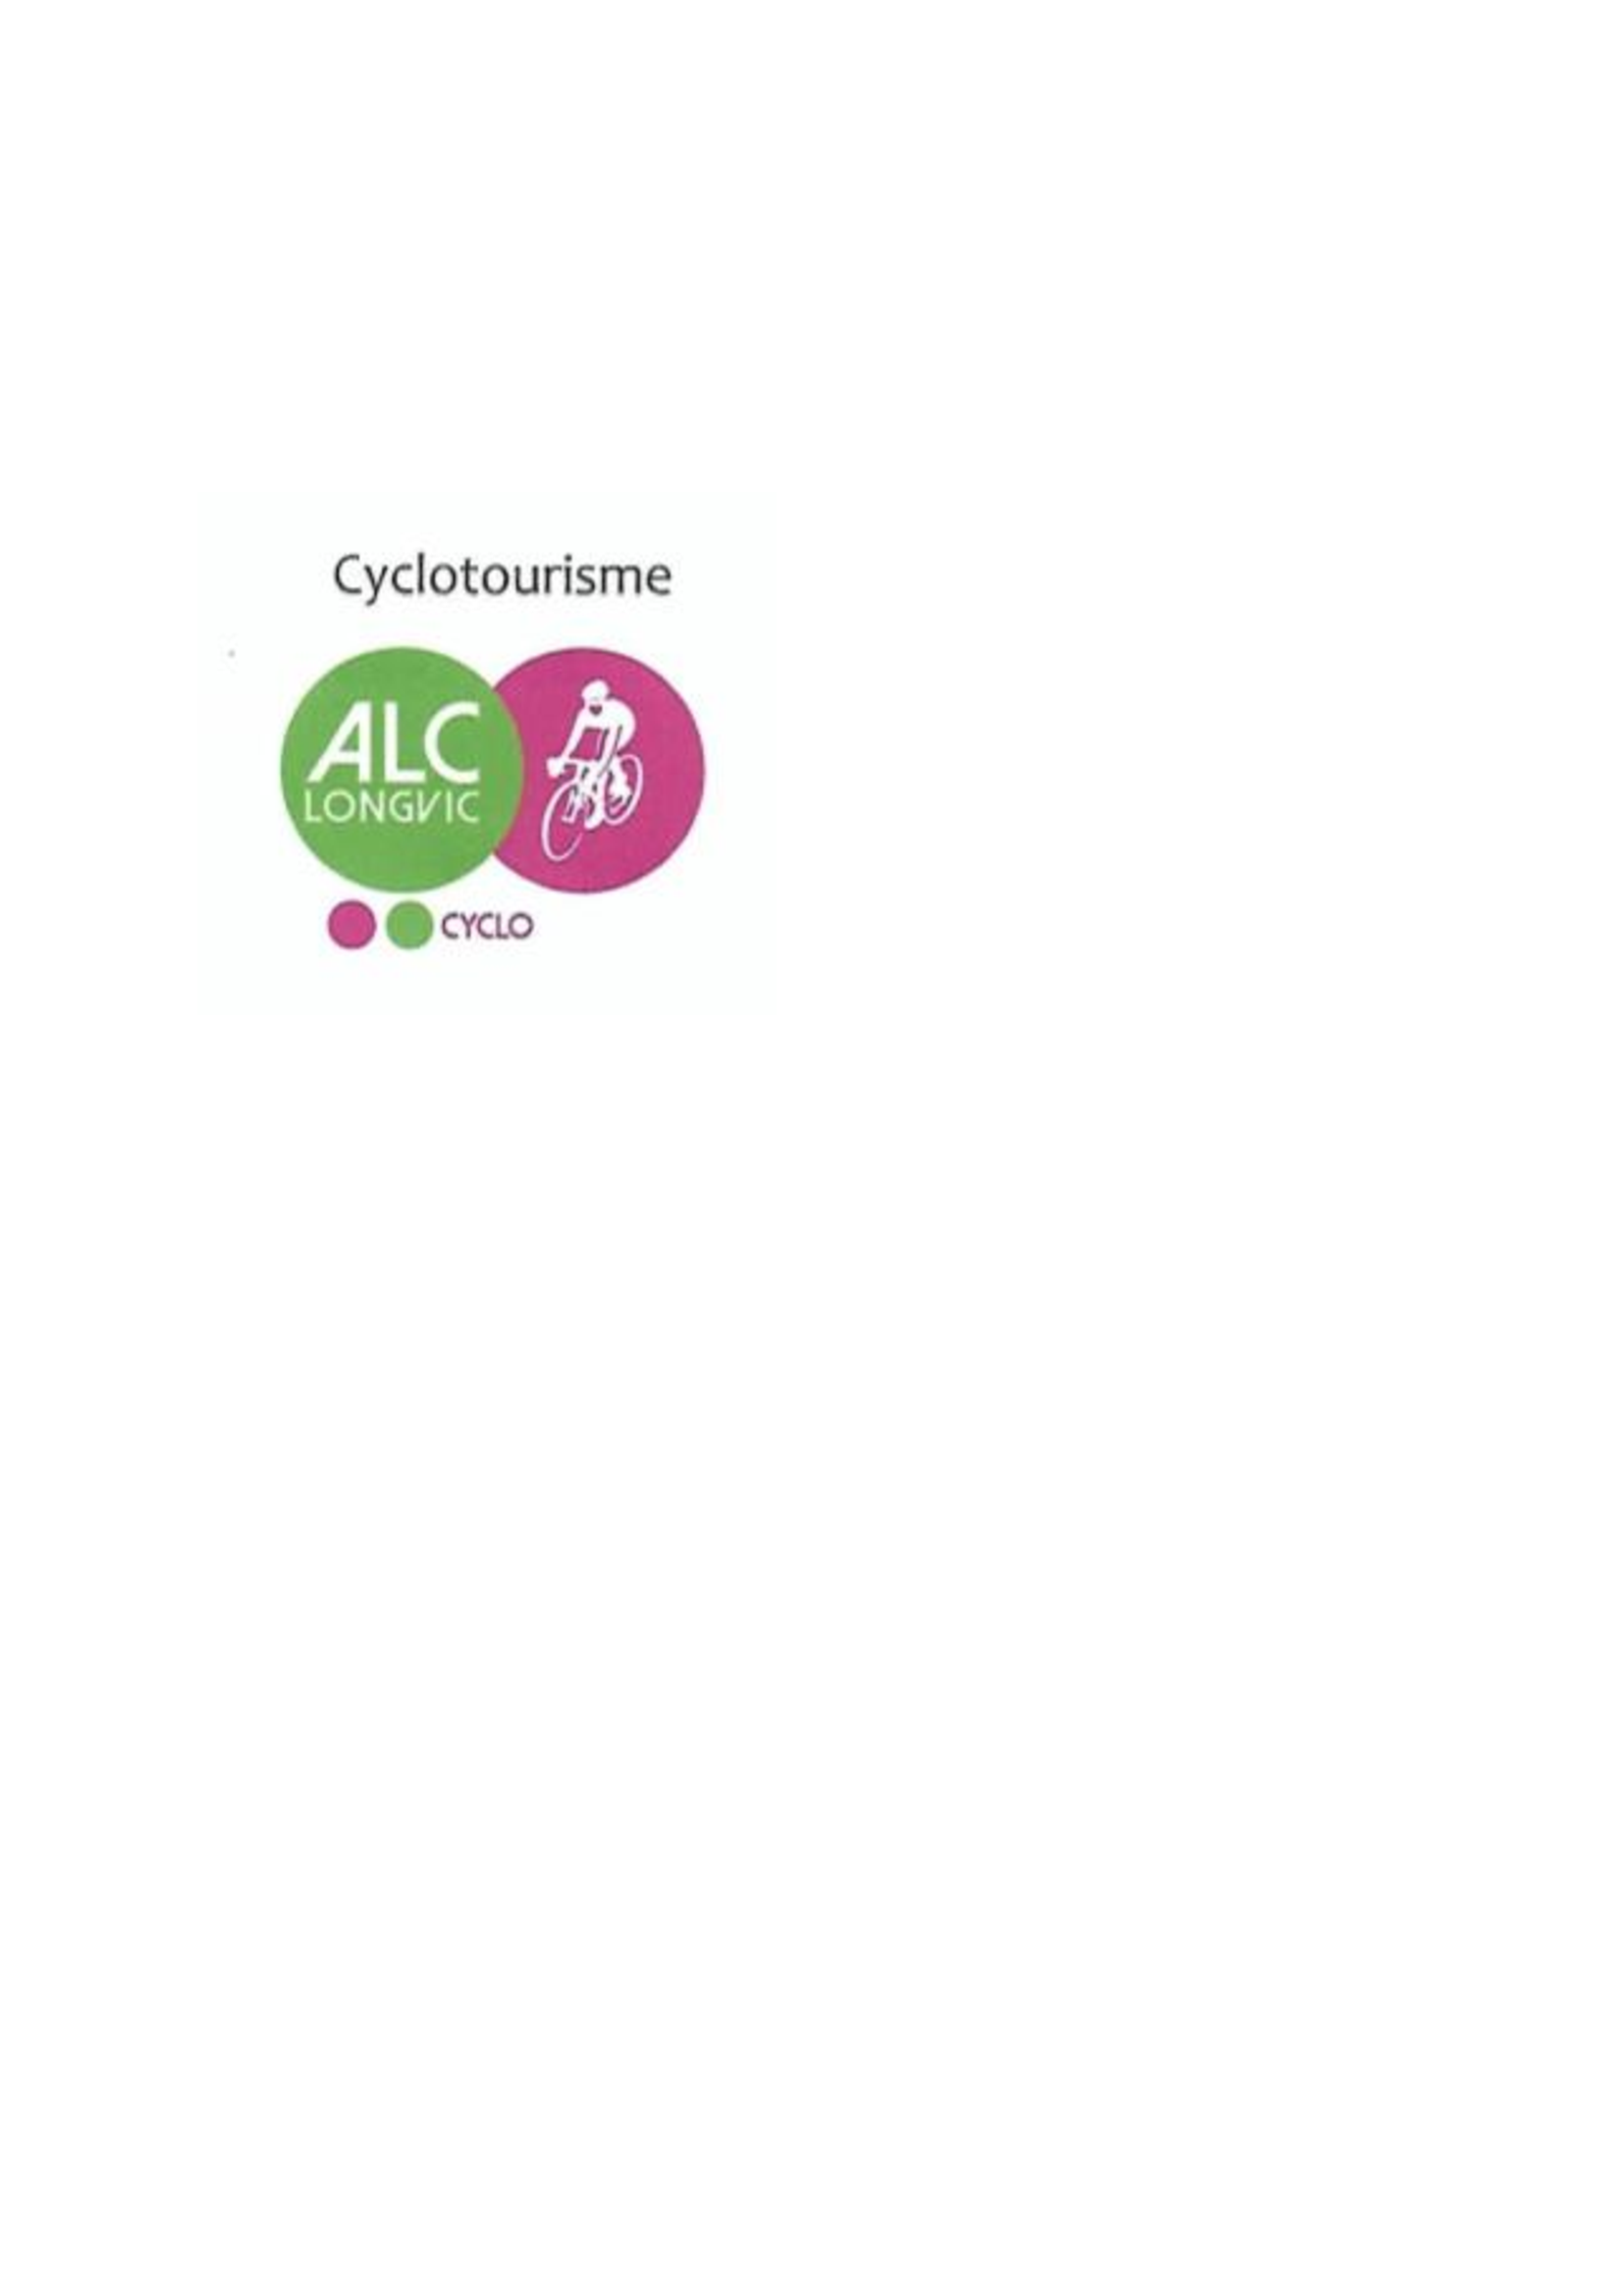 Logo-alc-cyclo.png